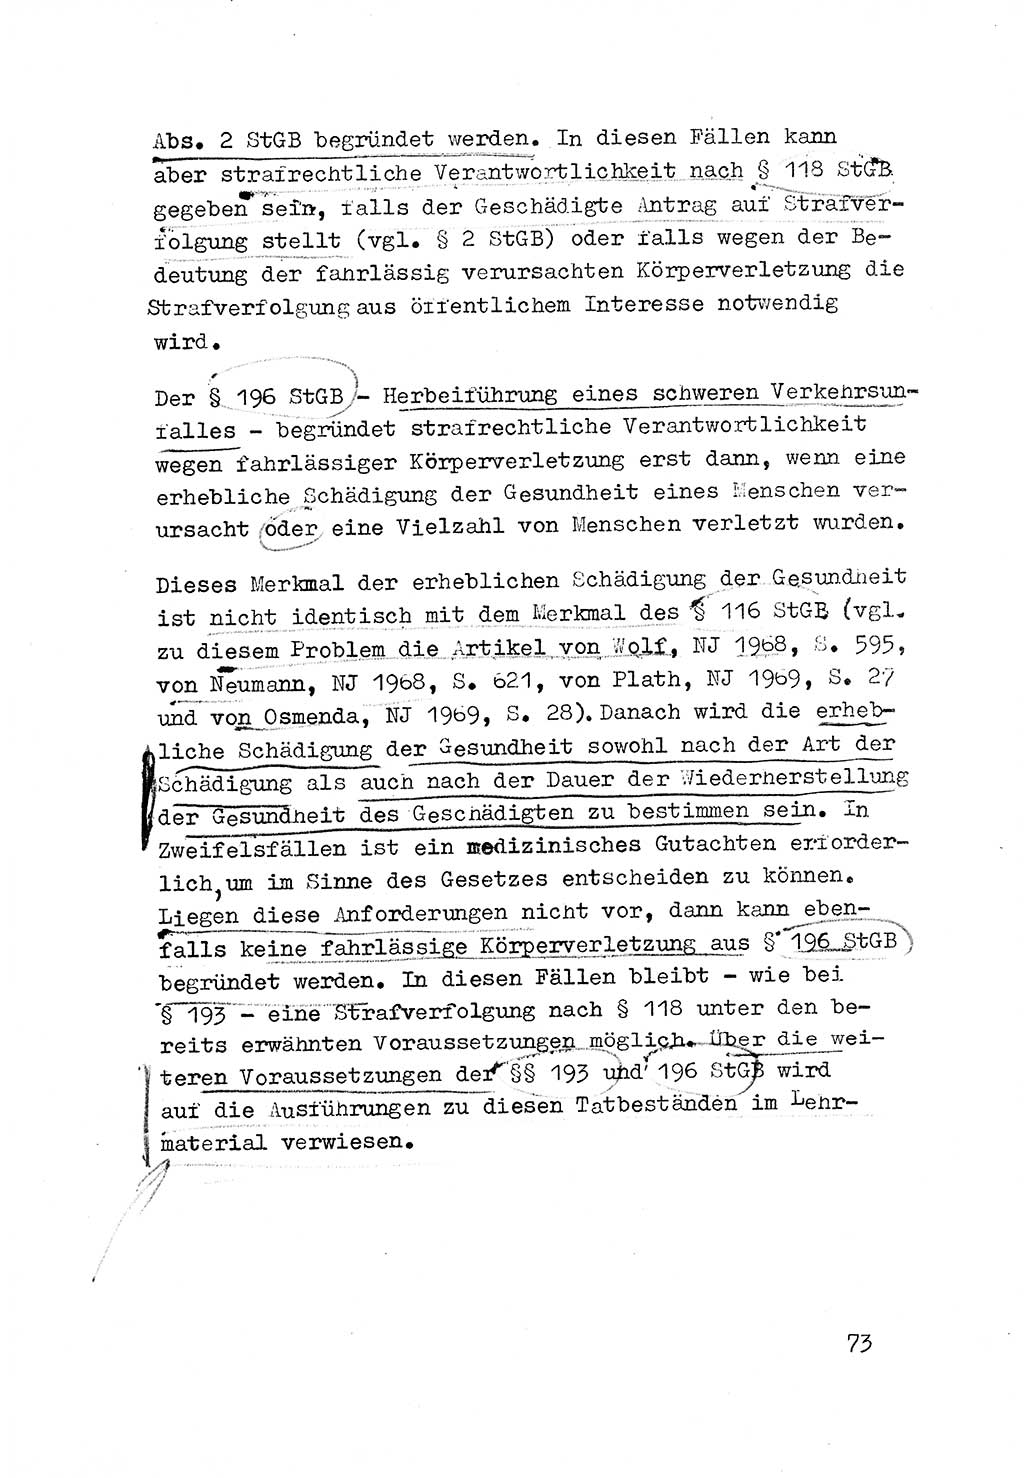 Strafrecht der DDR (Deutsche Demokratische Republik), Besonderer Teil, Lehrmaterial, Heft 3 1969, Seite 73 (Strafr. DDR BT Lehrmat. H. 3 1969, S. 73)